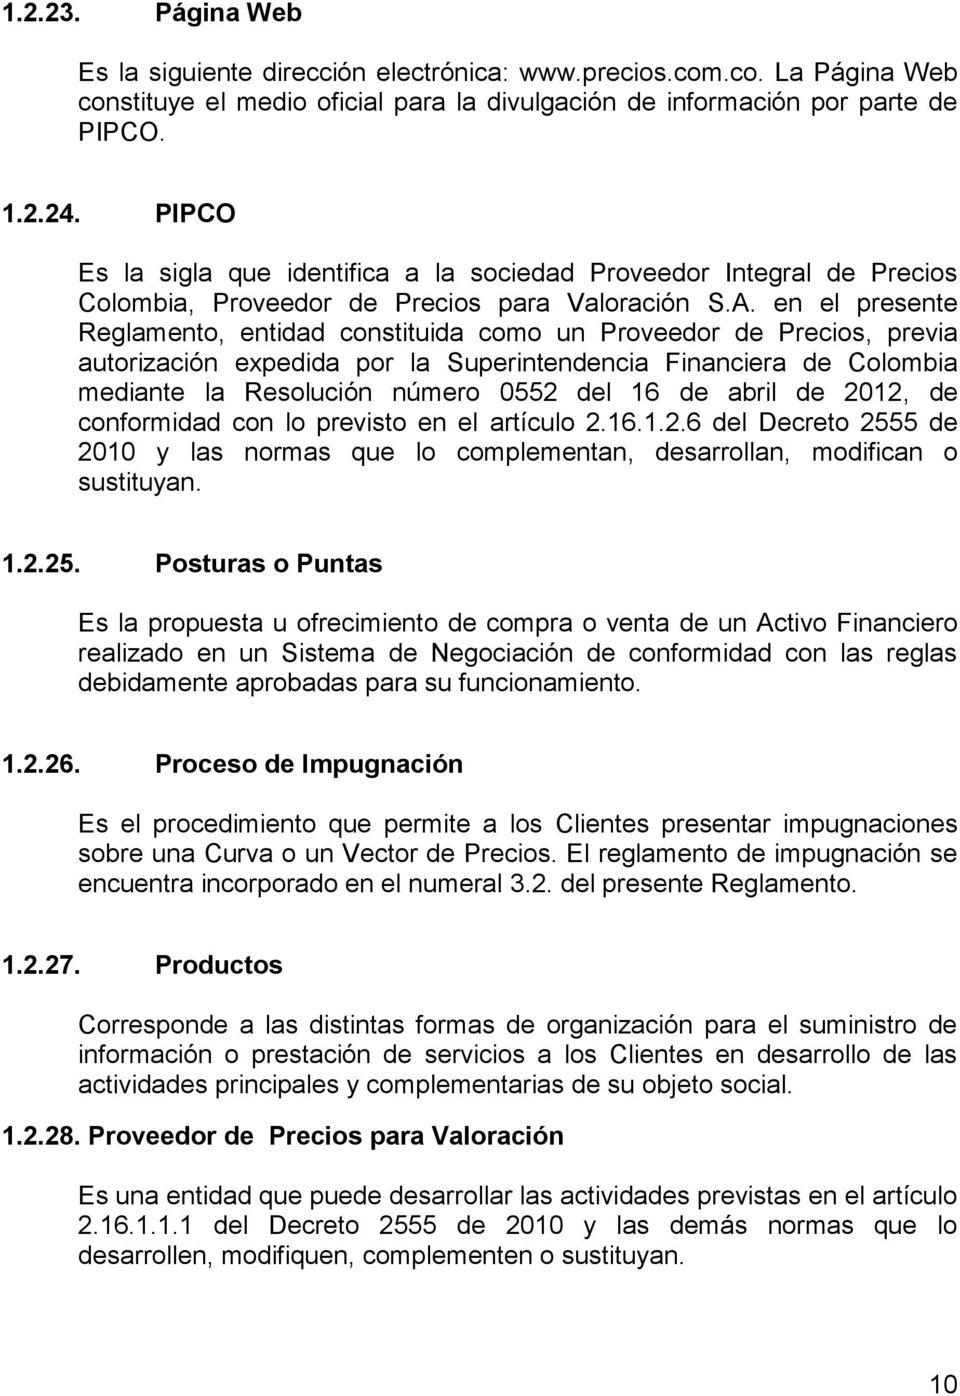 en el presente Reglamento, entidad constituida como un Proveedor de Precios, previa autorización expedida por la Superintendencia Financiera de Colombia mediante la Resolución número 0552 del 16 de